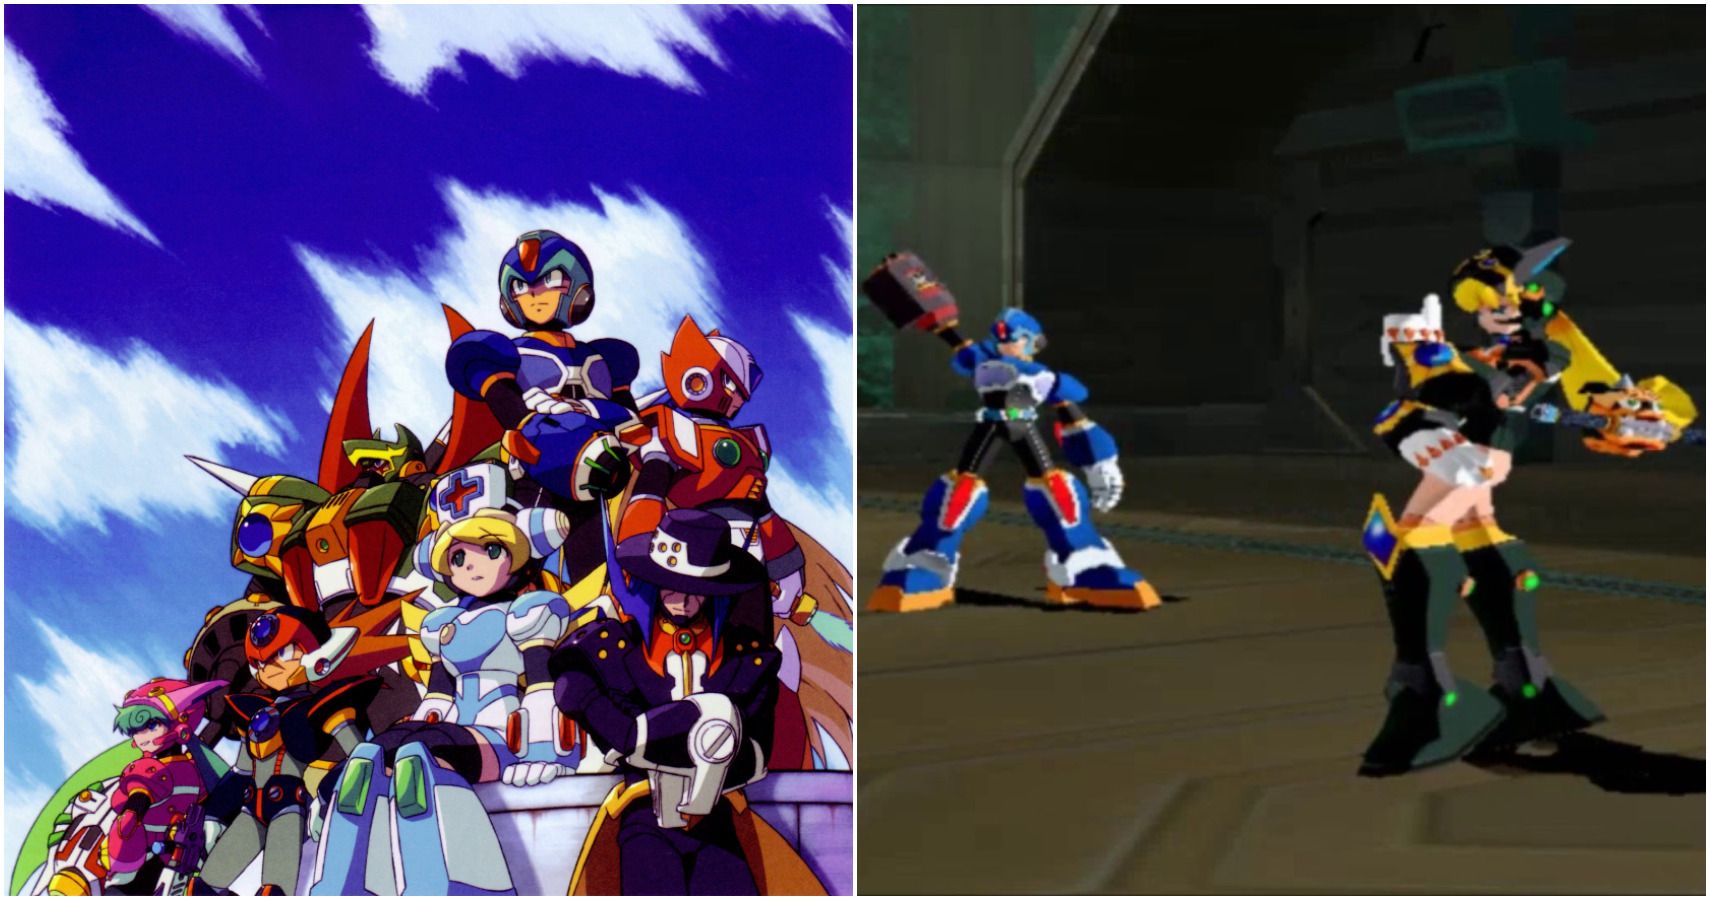 Mega Man X: Command Mission: Hodnotí sa každý člen strany od najhoršieho po najlepšieho